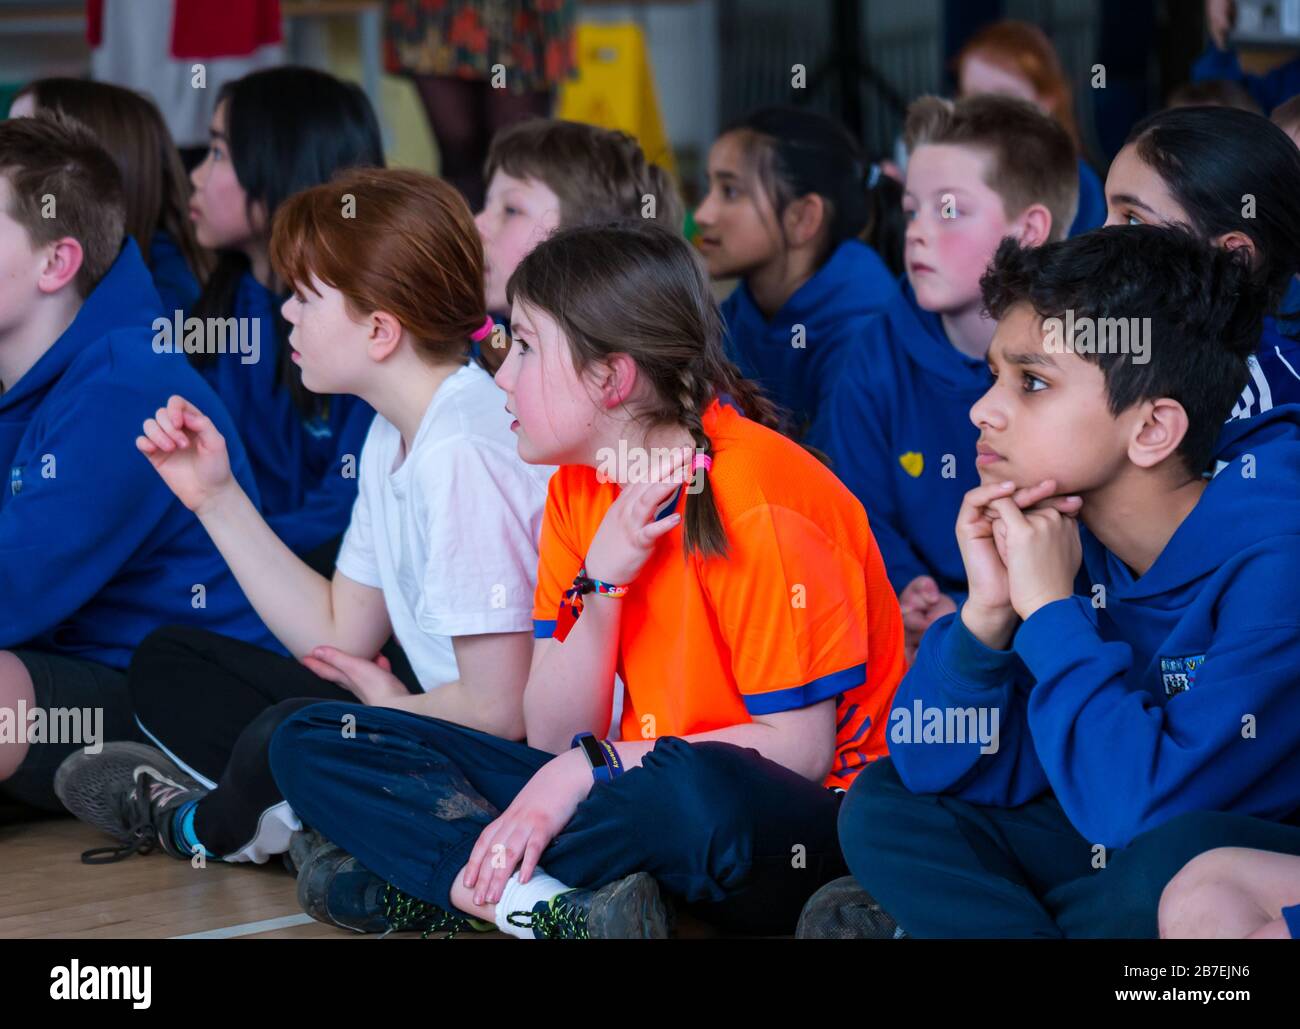 Enfants scolarisés à l'école primaire de Davidsons, Édimbourg, Écosse, Royaume-Uni Banque D'Images